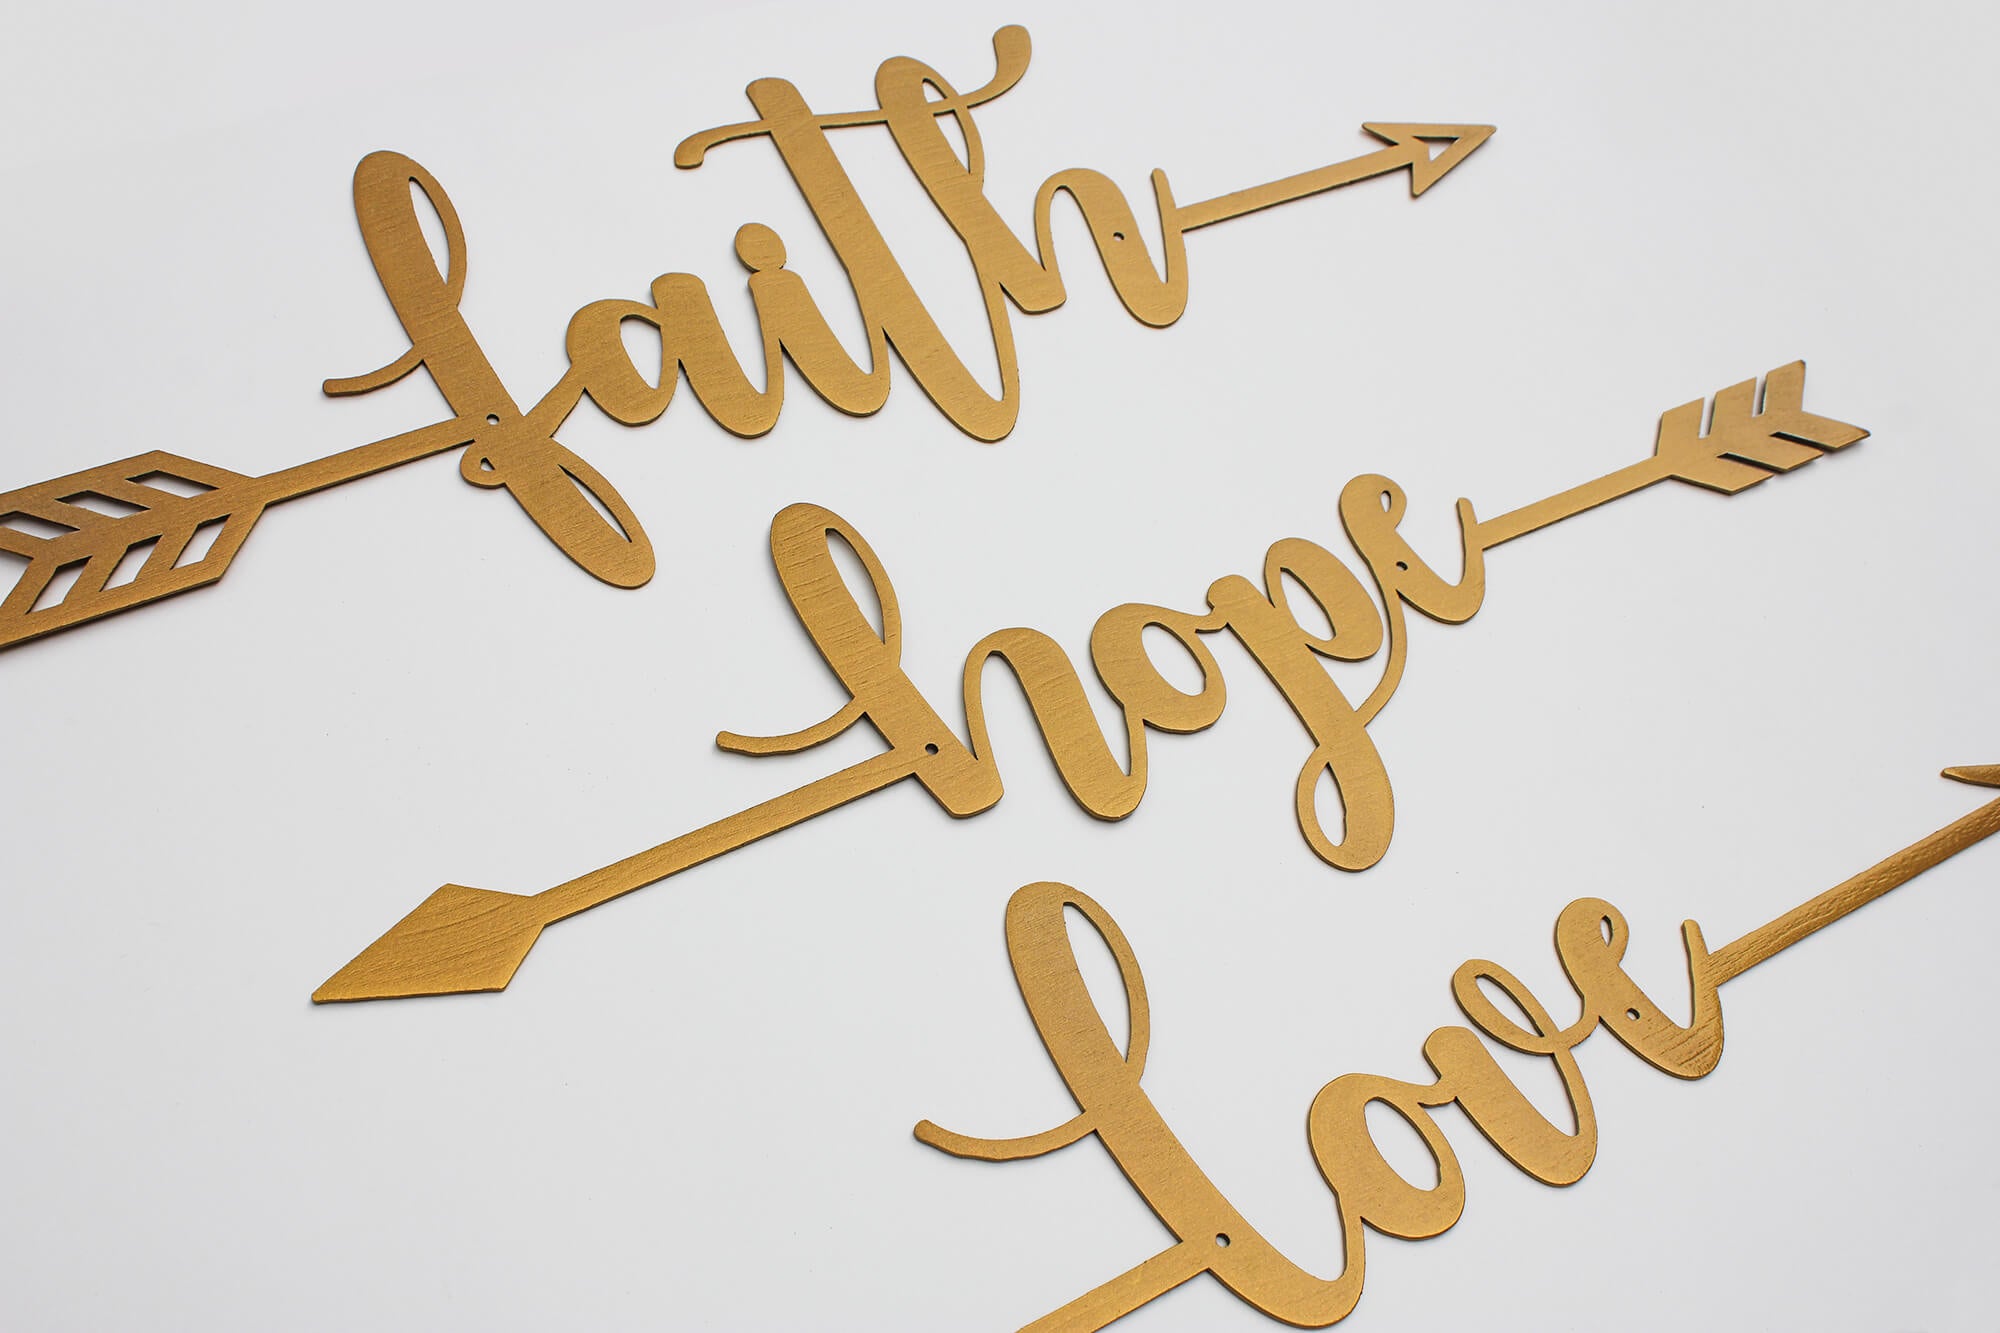 Faith Hope Love Arrows 18" / Black - RealSteel Center